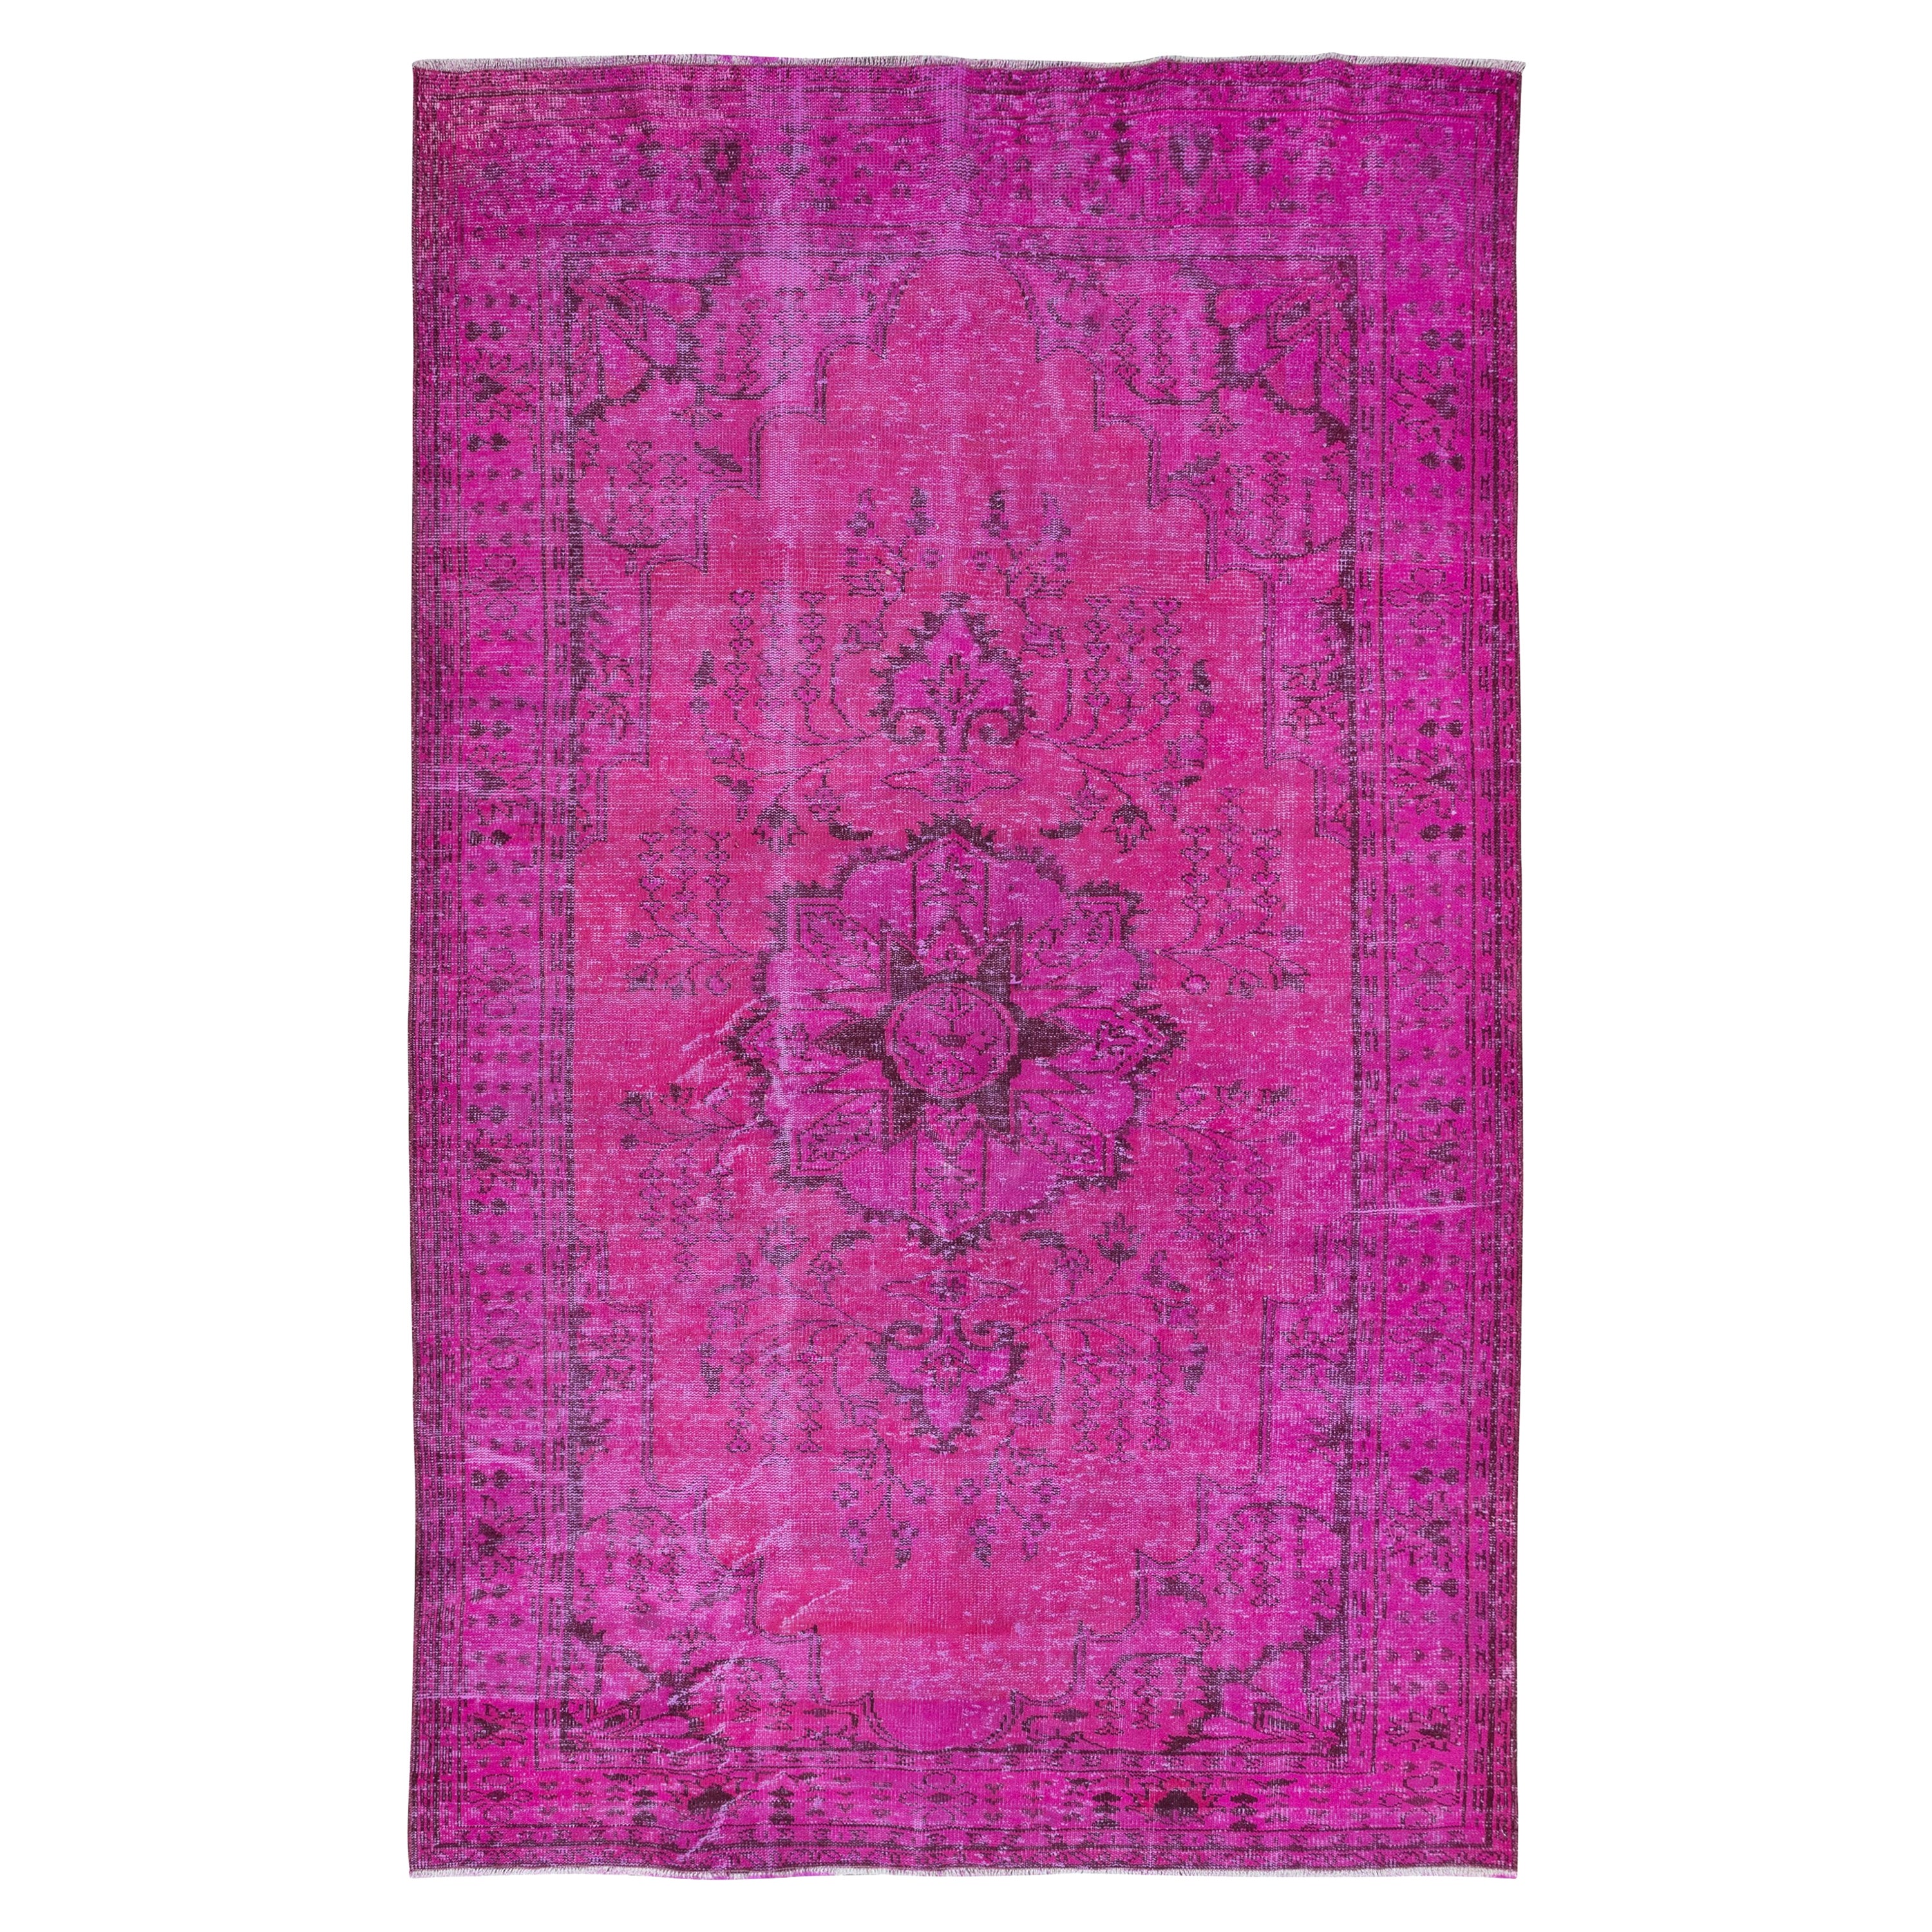 6x9.7 Ft Handgefertigter türkischer Teppich in Rosa, moderner Teppich aus Wolle und Baumwolle